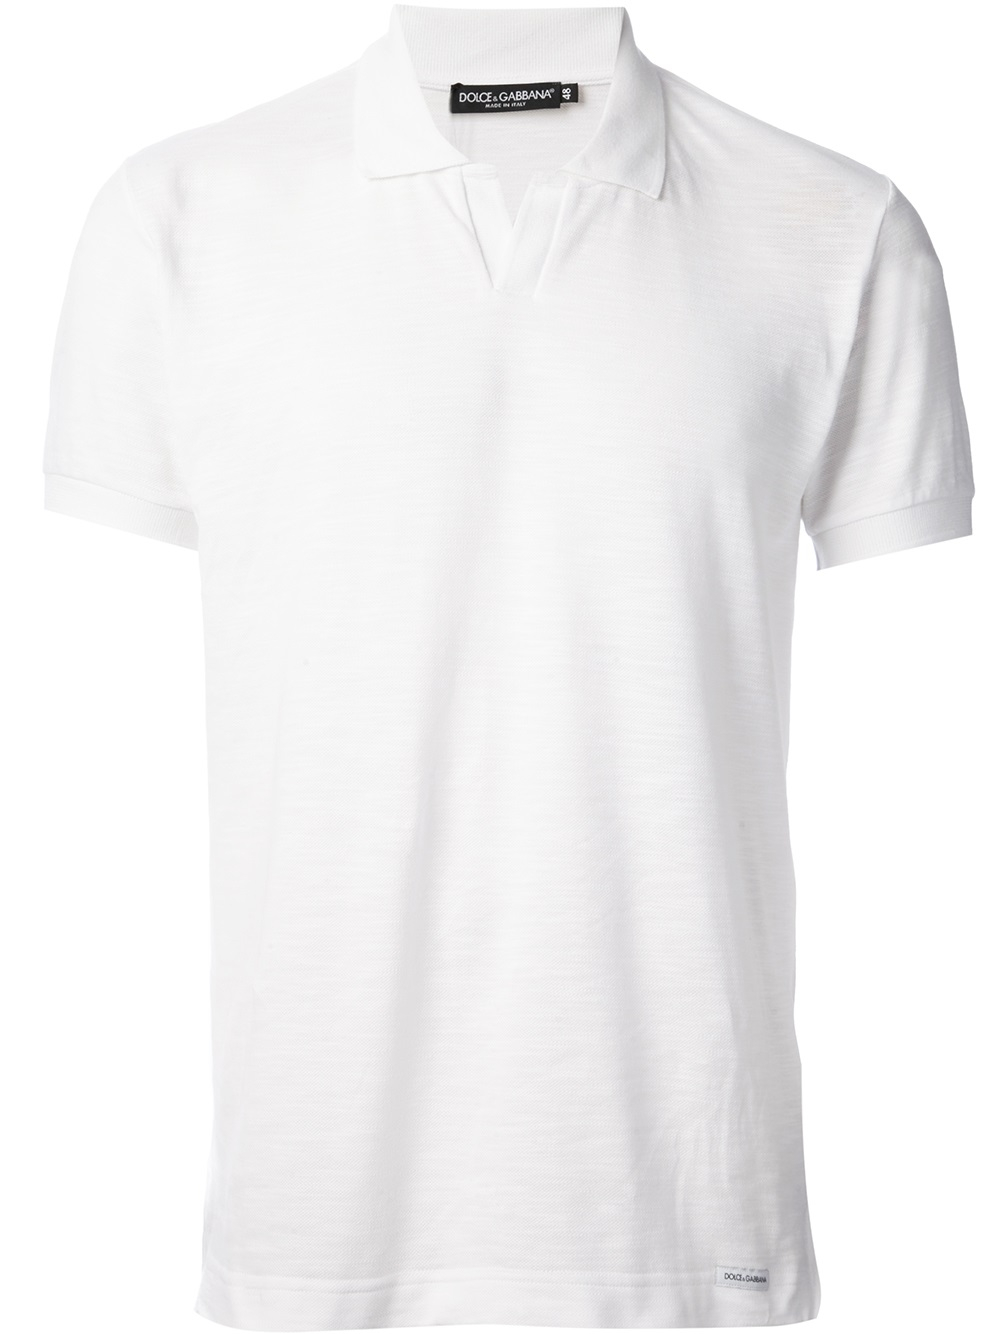 Lyst - Dolce & Gabbana V Slit Polo Shirt in White for Men